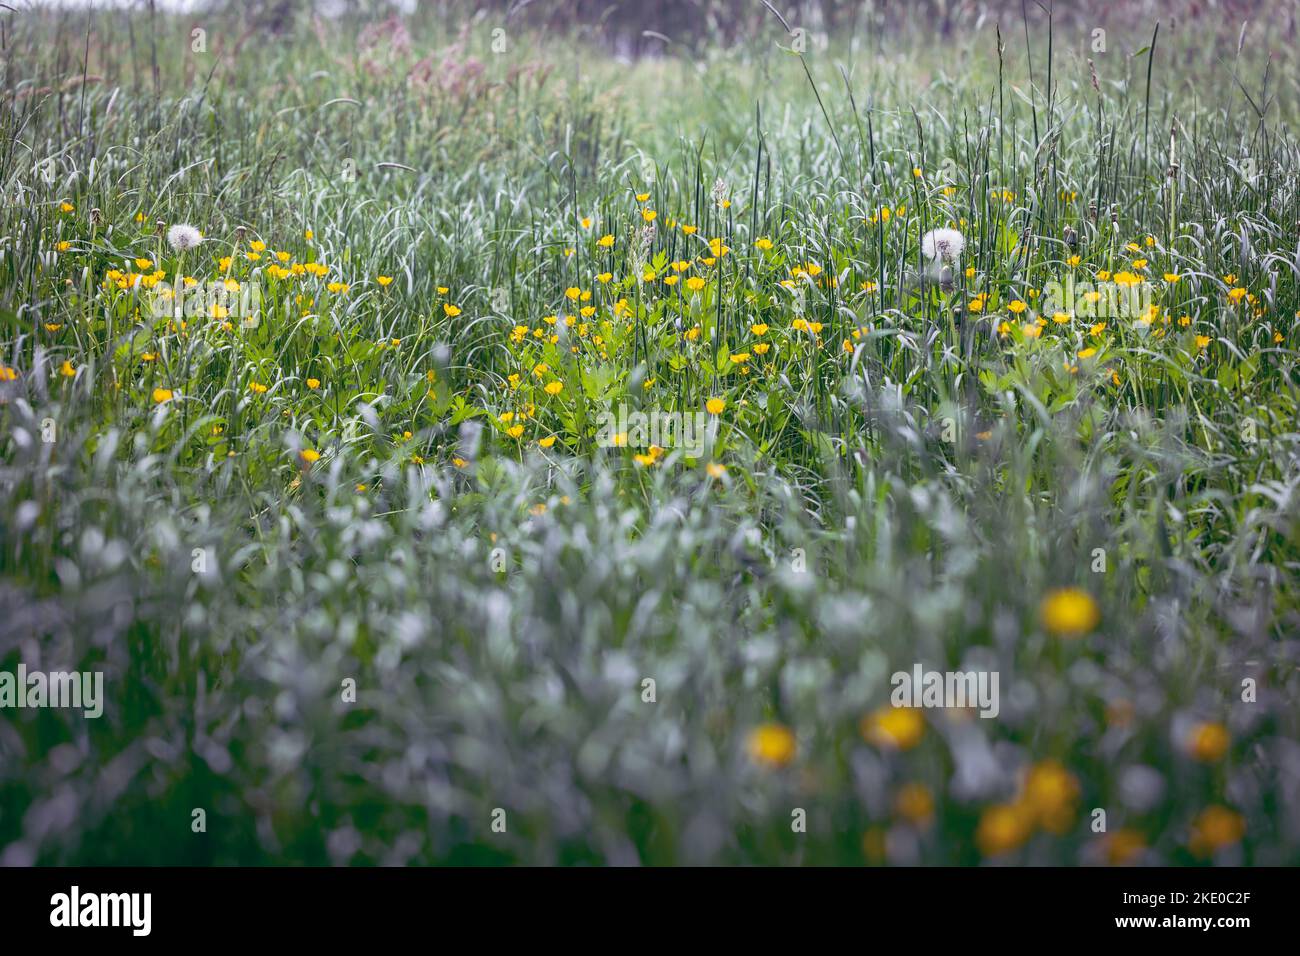 Meadow in Wegrow County, Mazowsze region of Poland Stock Photo